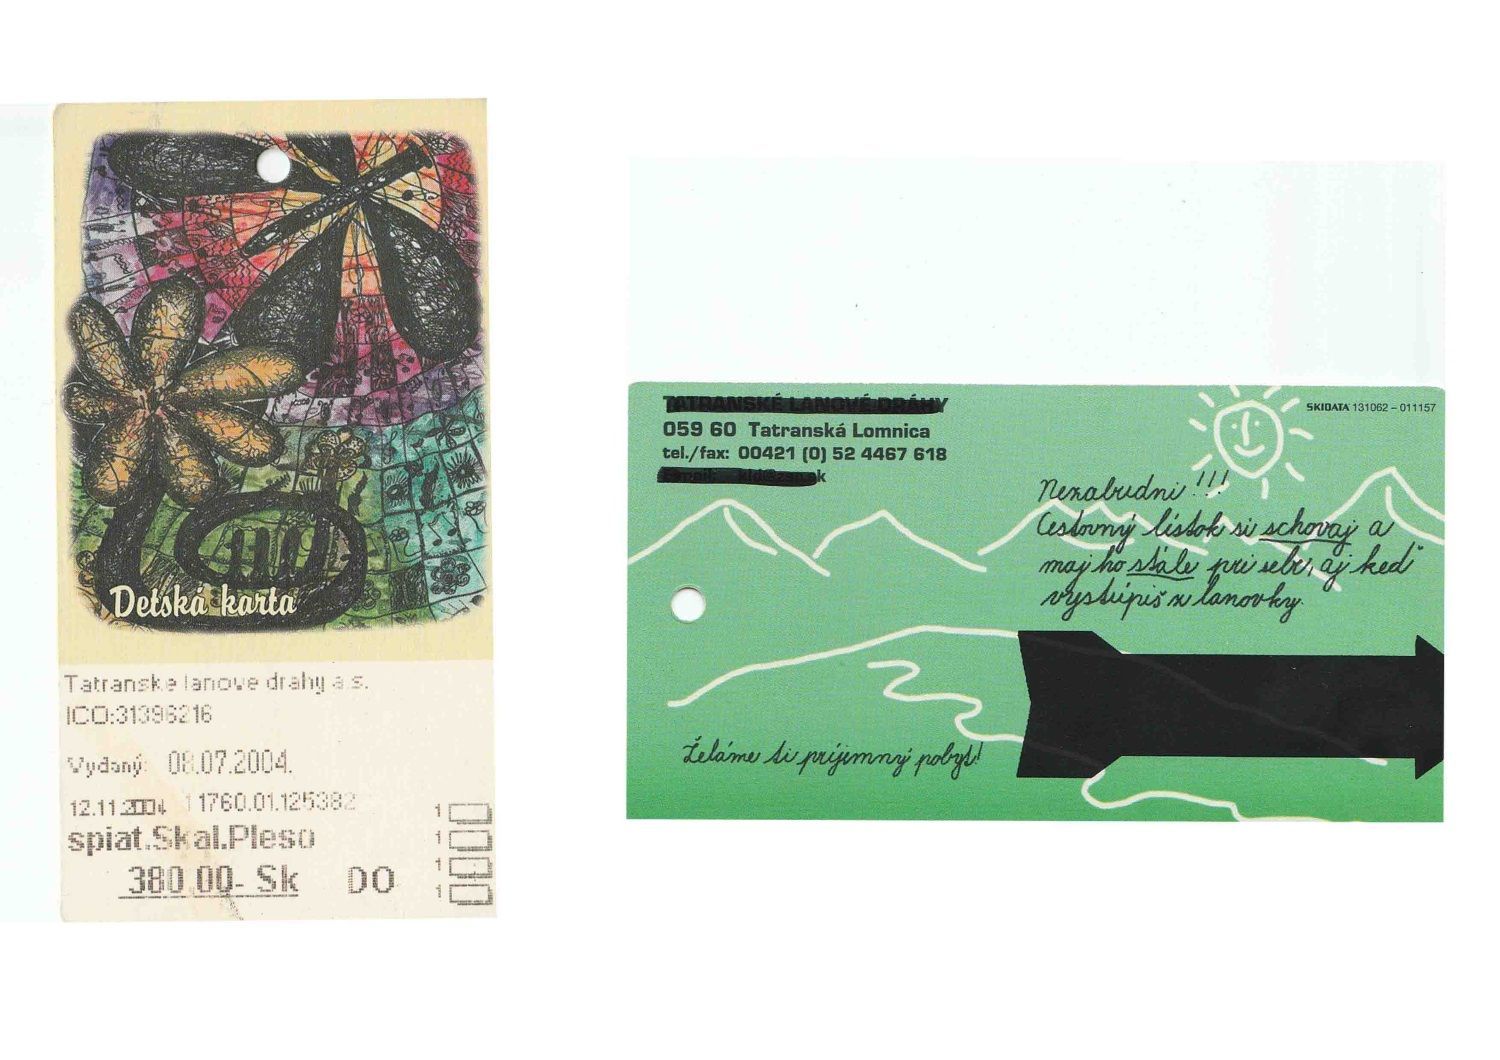 Zajímavá účtenka - vstupenka na Tatranskou lanovku dítě 2004